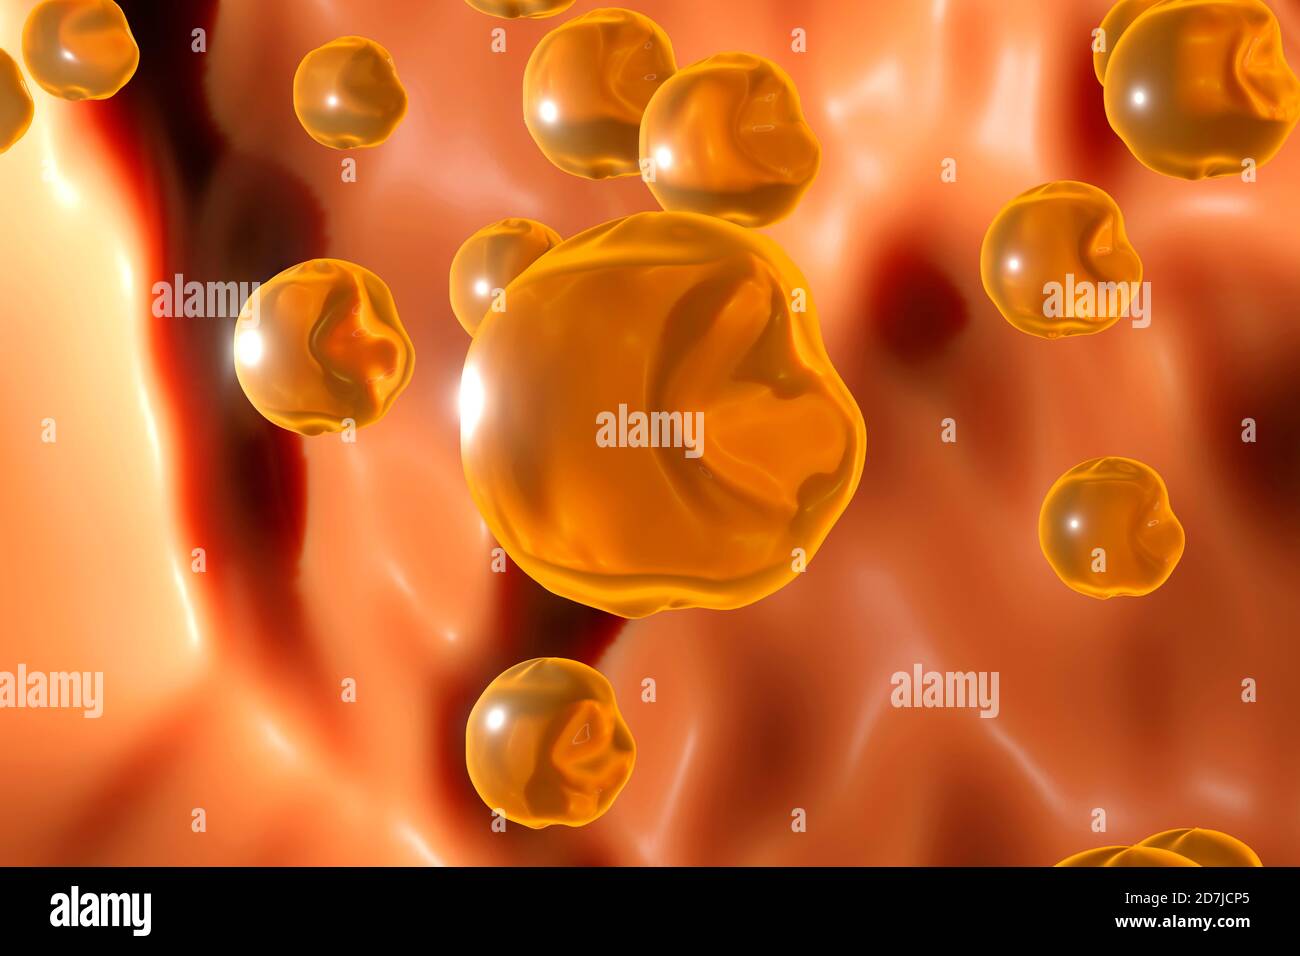 Dreidimensionale Darstellung von Cholesterinmolekülen, die im menschlichen Körper schwimmen Stockfoto